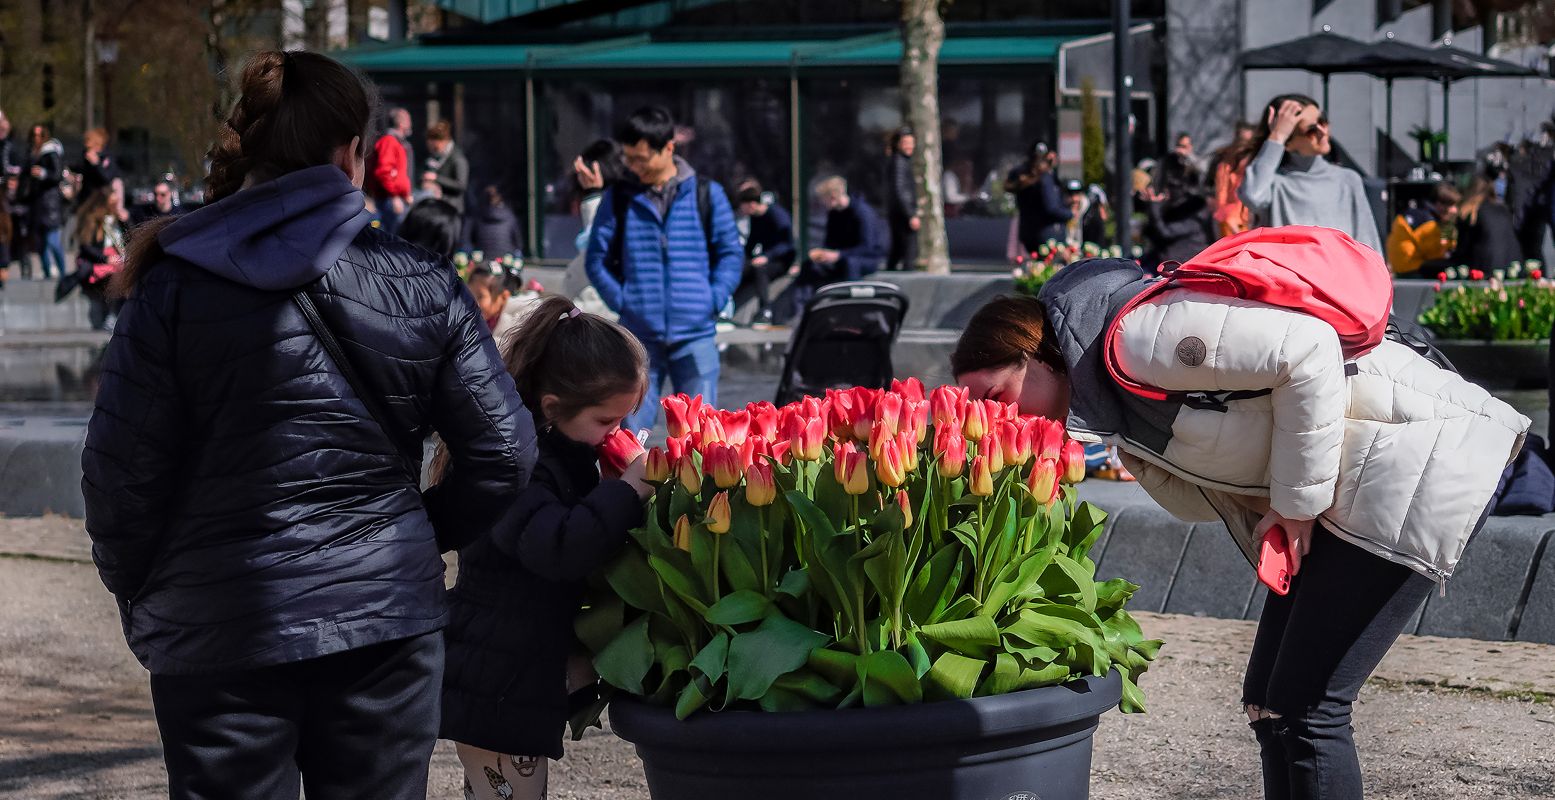 Genieten van de tulpen in Amsterdam tijdens het Tulp Festival. Foto: Tulp Festival © John Lewis Marshall